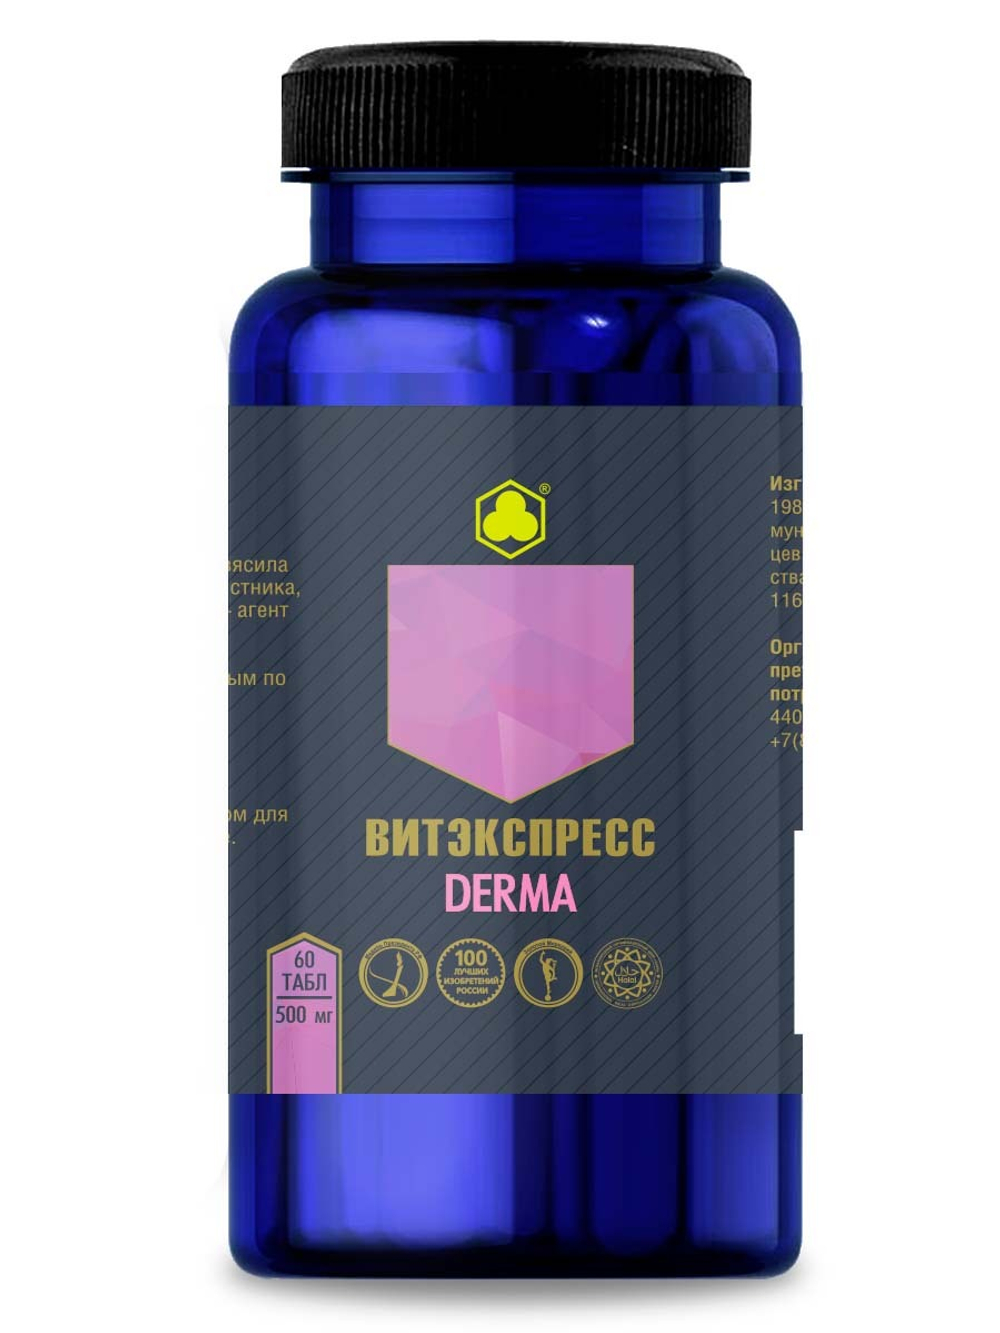 Органик комплекс Дерма (Derma) №60 таб. массой 500 мг